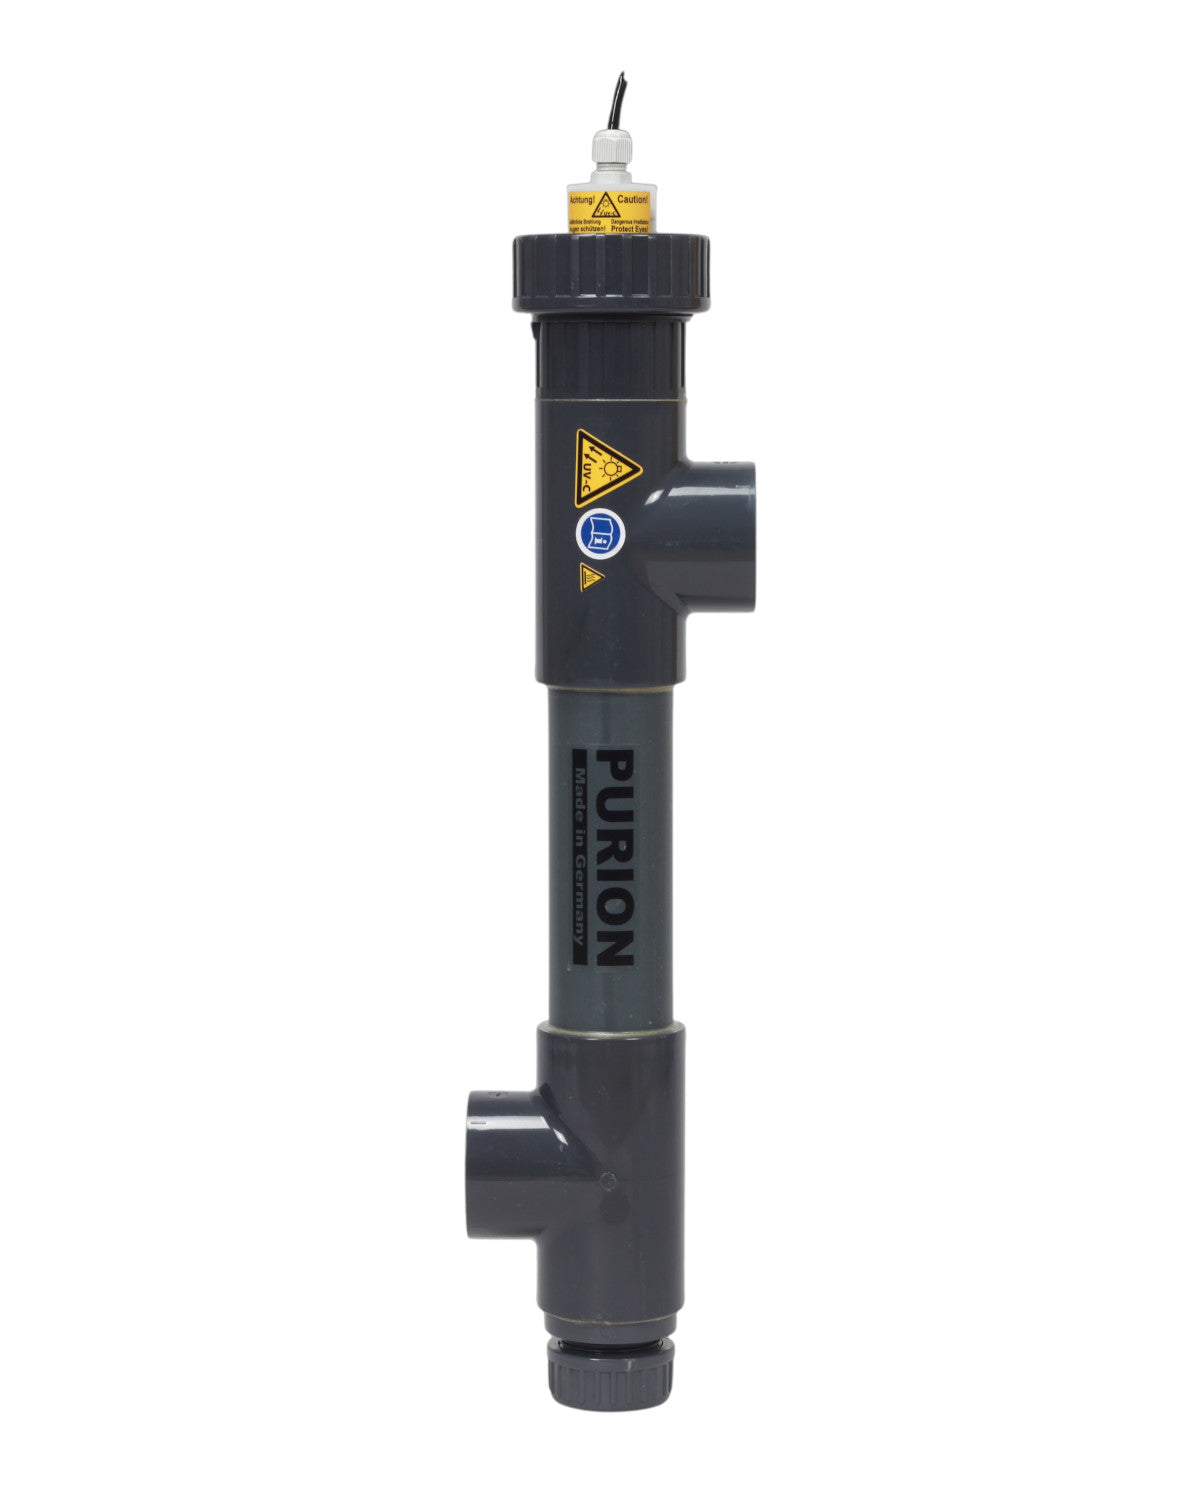 Ein schwarzes PURION 1000 PVC-U 12V/24V DC OTC Plus-Rohr mit einem gelben Ventil, speziell für die UV-C-Reinigung entwickelt und kompatibel mit PURION 1000 P-Systemen. Ideal für den Einsatz in Salzwasserpools.